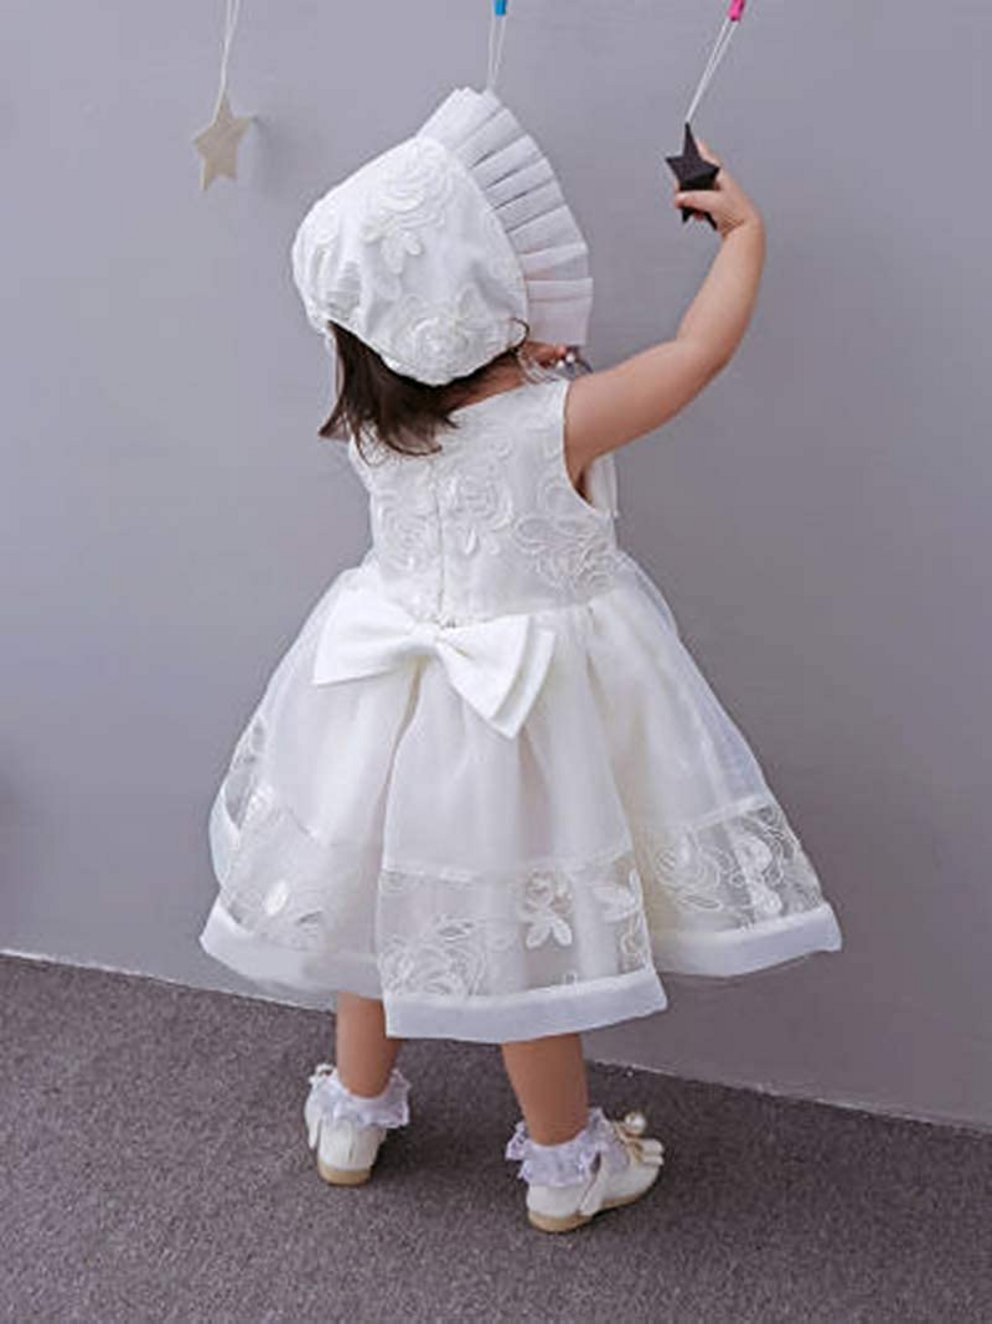 Taufkleider Mädchen: Schönes weißes Kleid mit Schlaufe